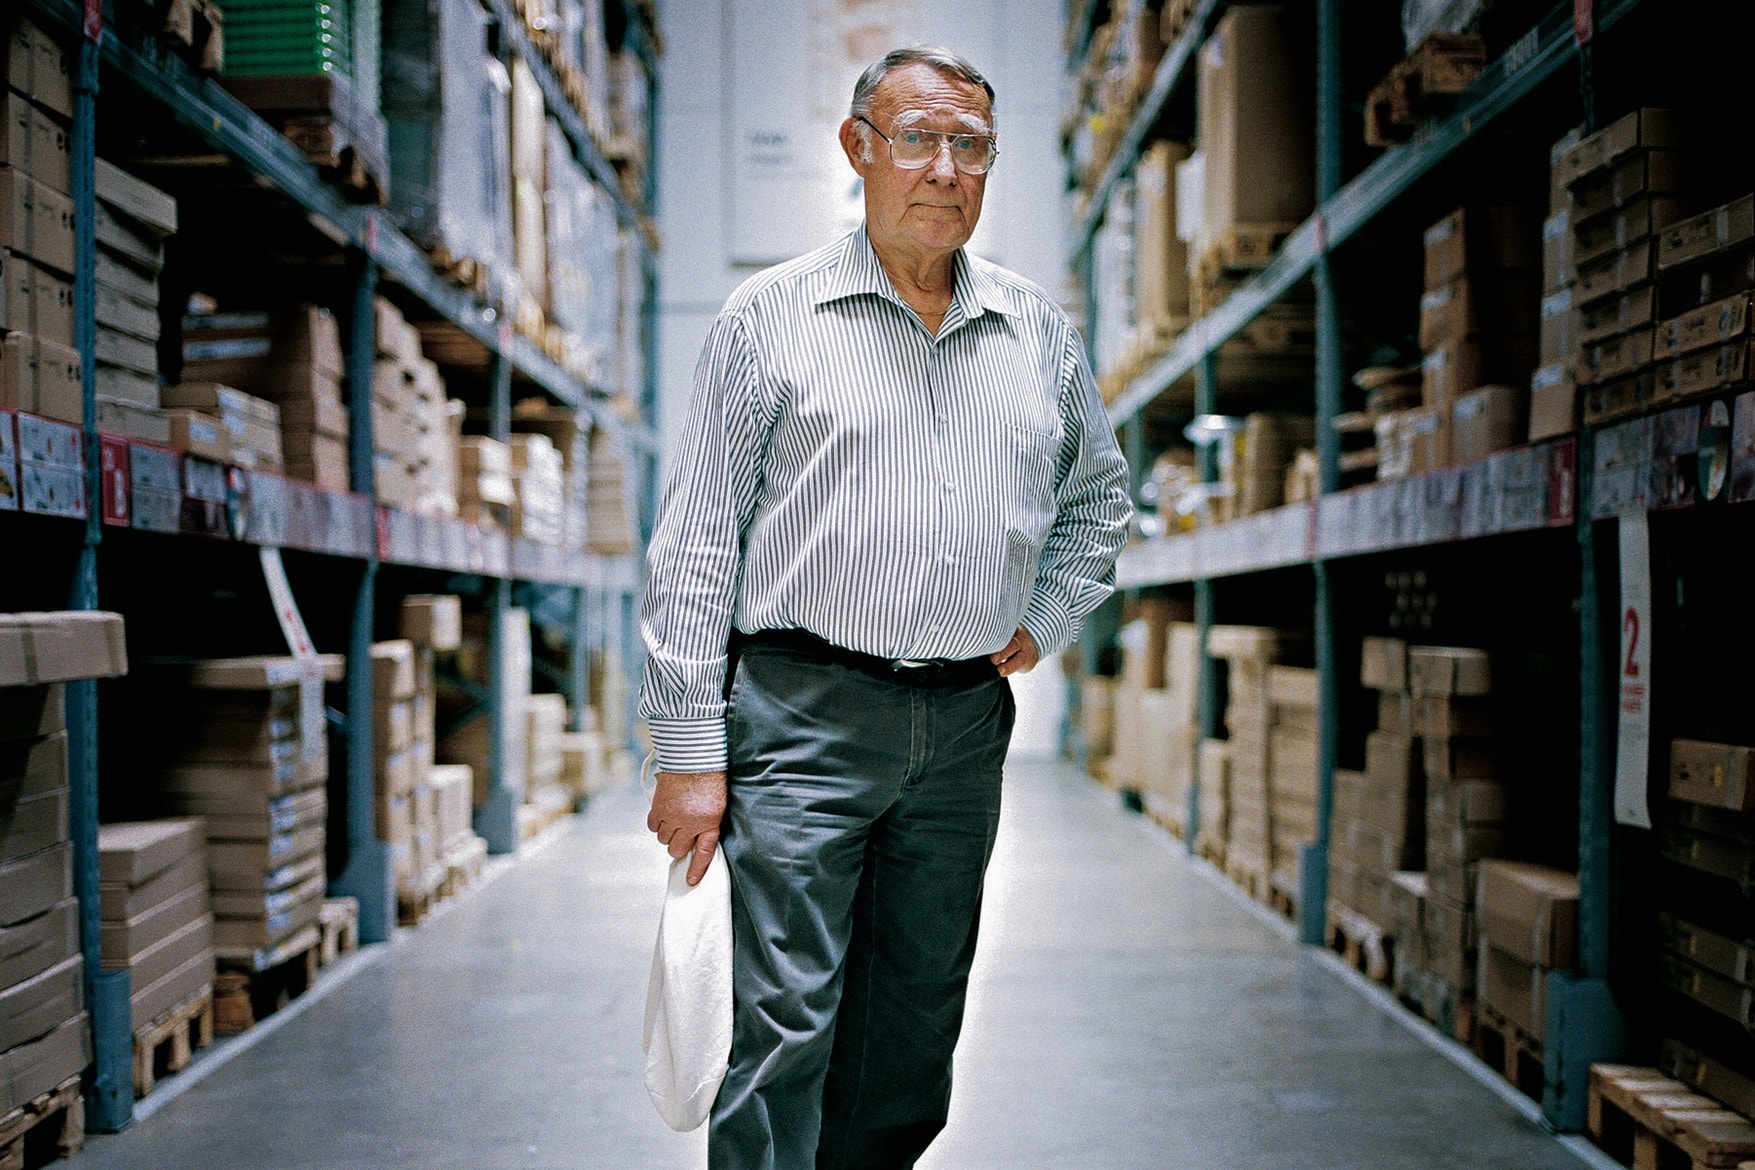 スウェーデンを世界に押し広めた偉大な起業家である IKEA の創業者イングバル・カンプラードが死去 イケア スウェーデン 家具 Ingvar Kamprad イングバル カンプラード hypebeast